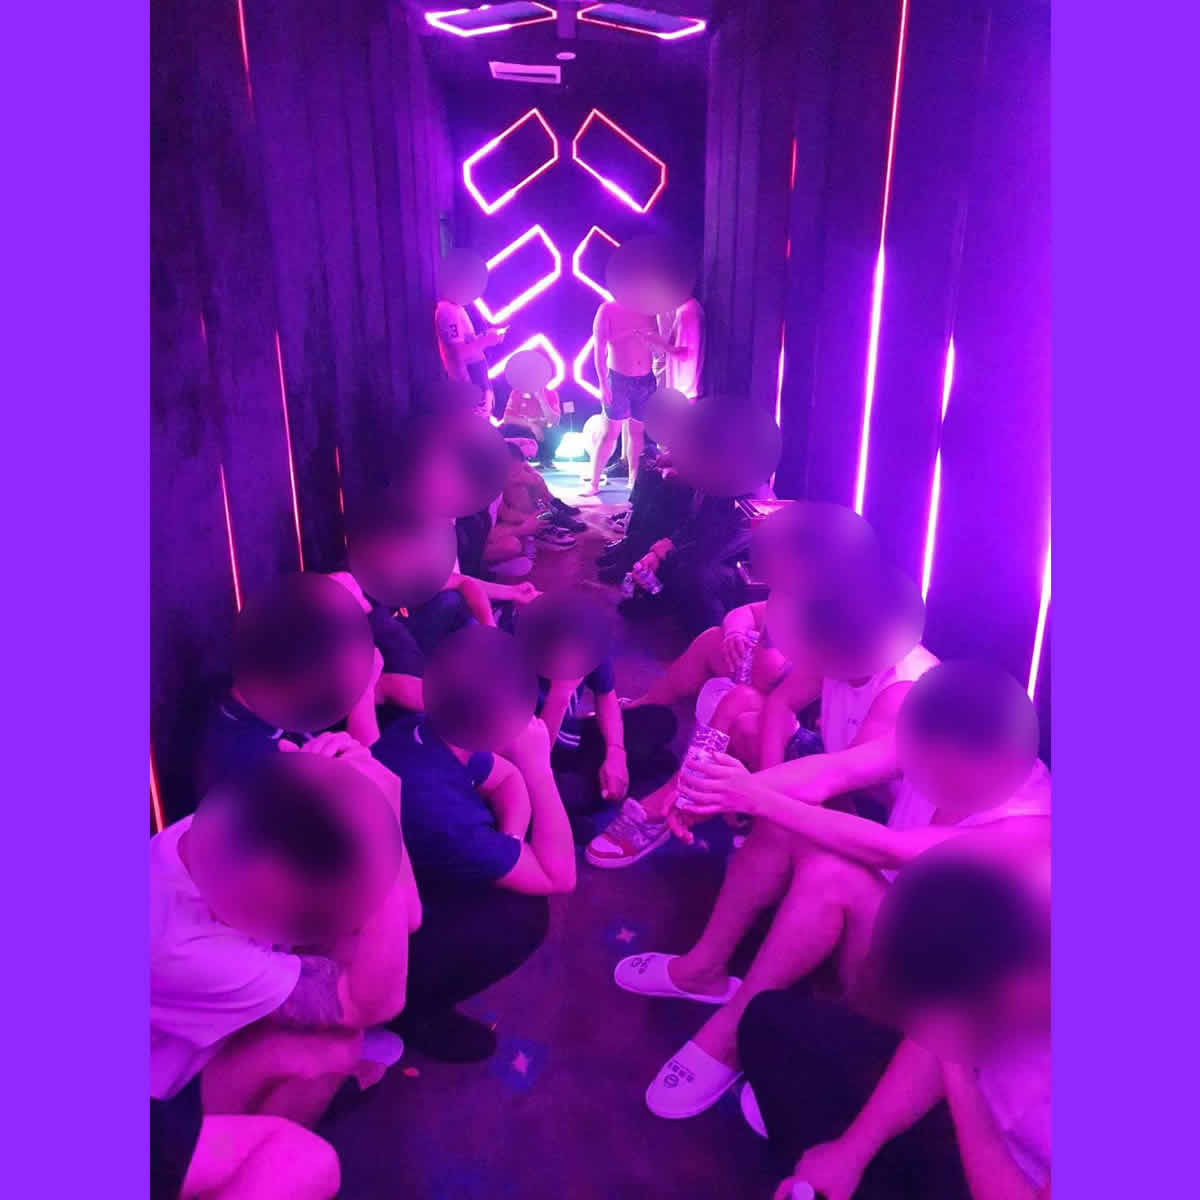 バンコク薬物パーティー、中国人237人ら逮捕